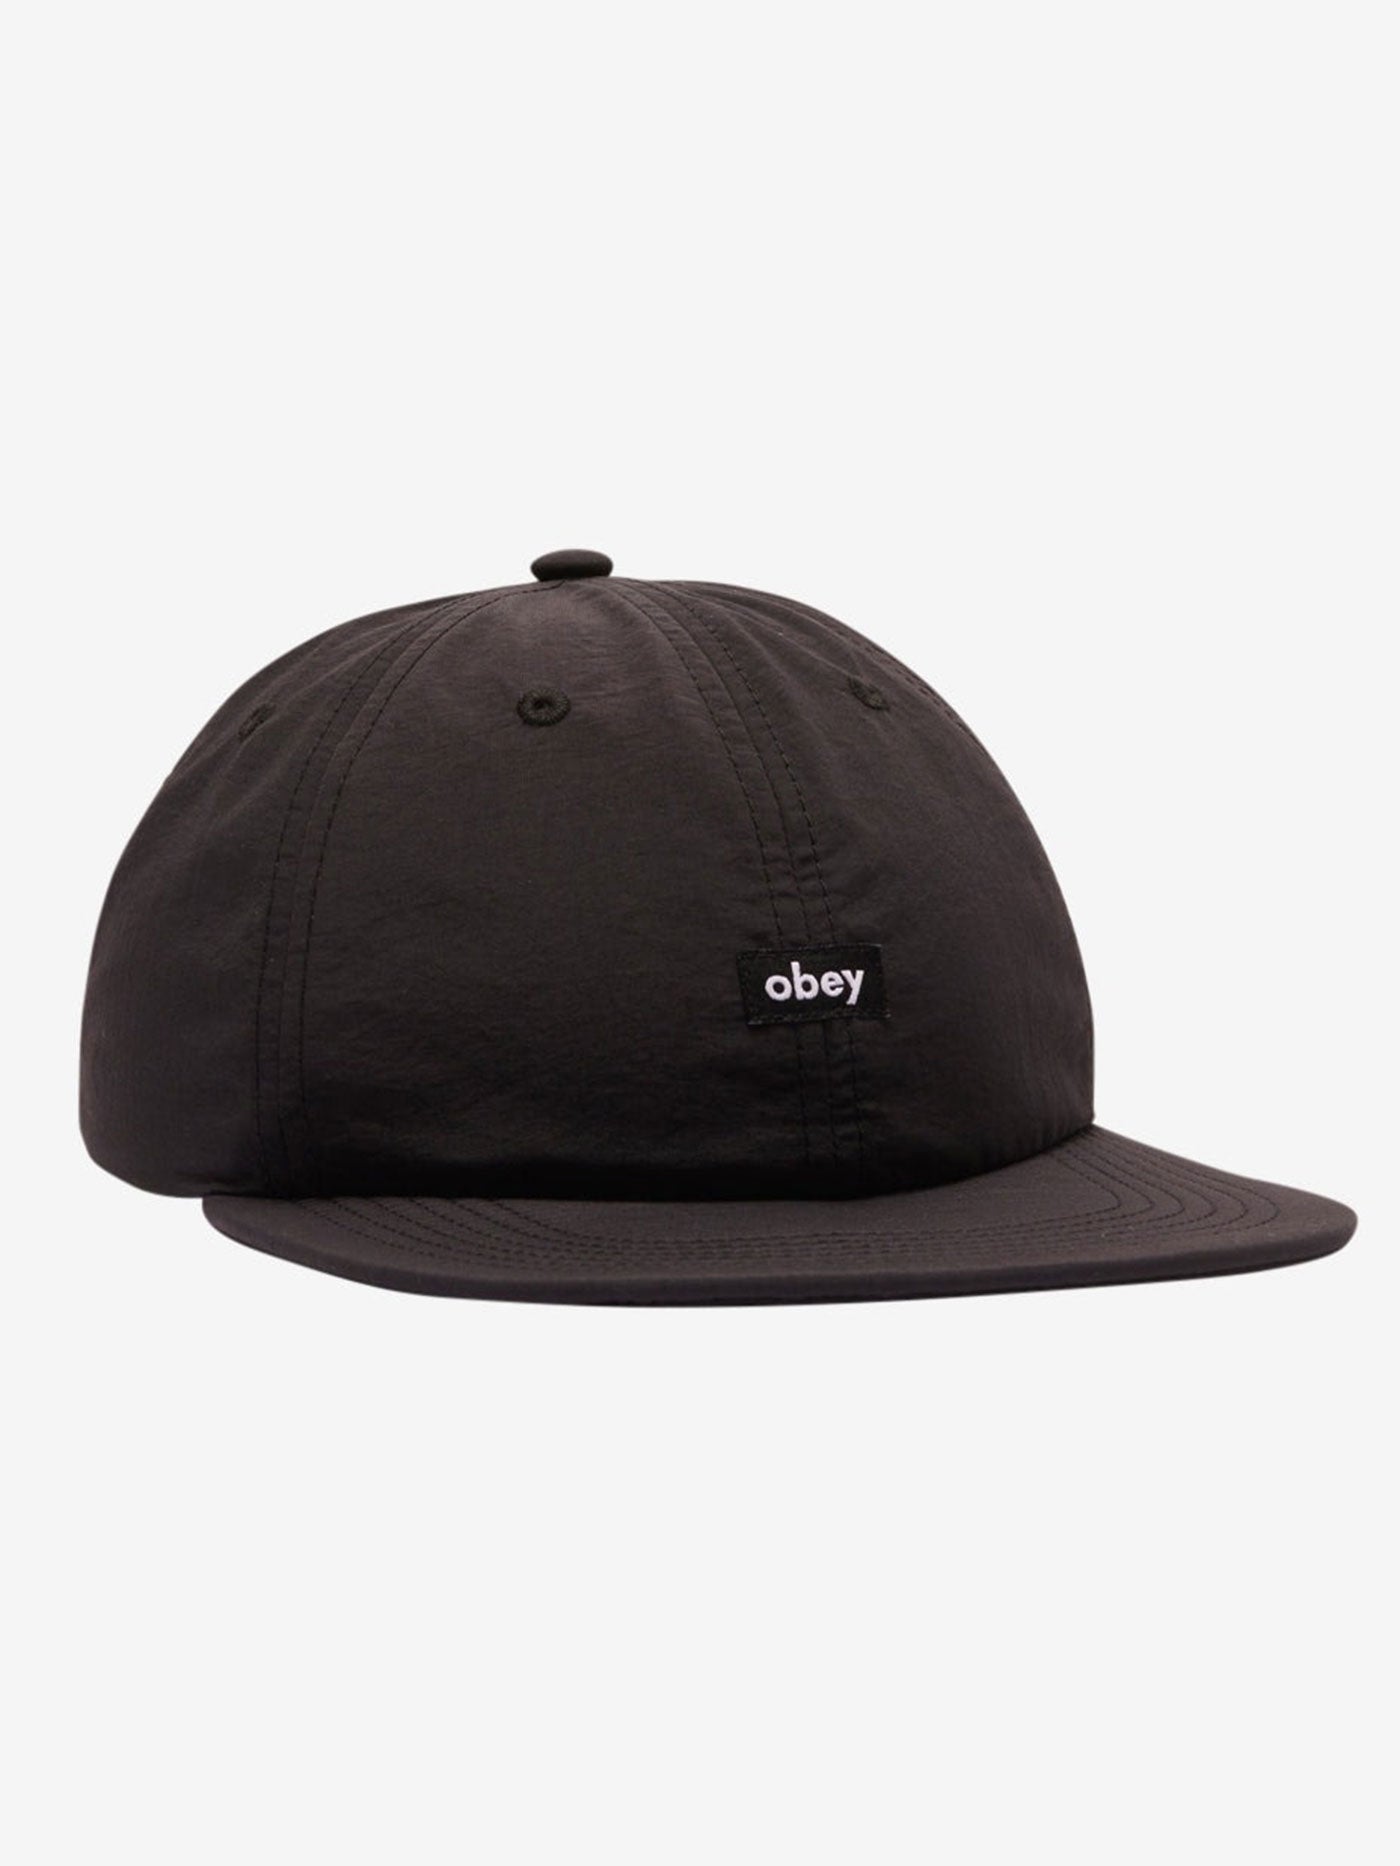 Obey Lowercase Nylon Strapback Hat